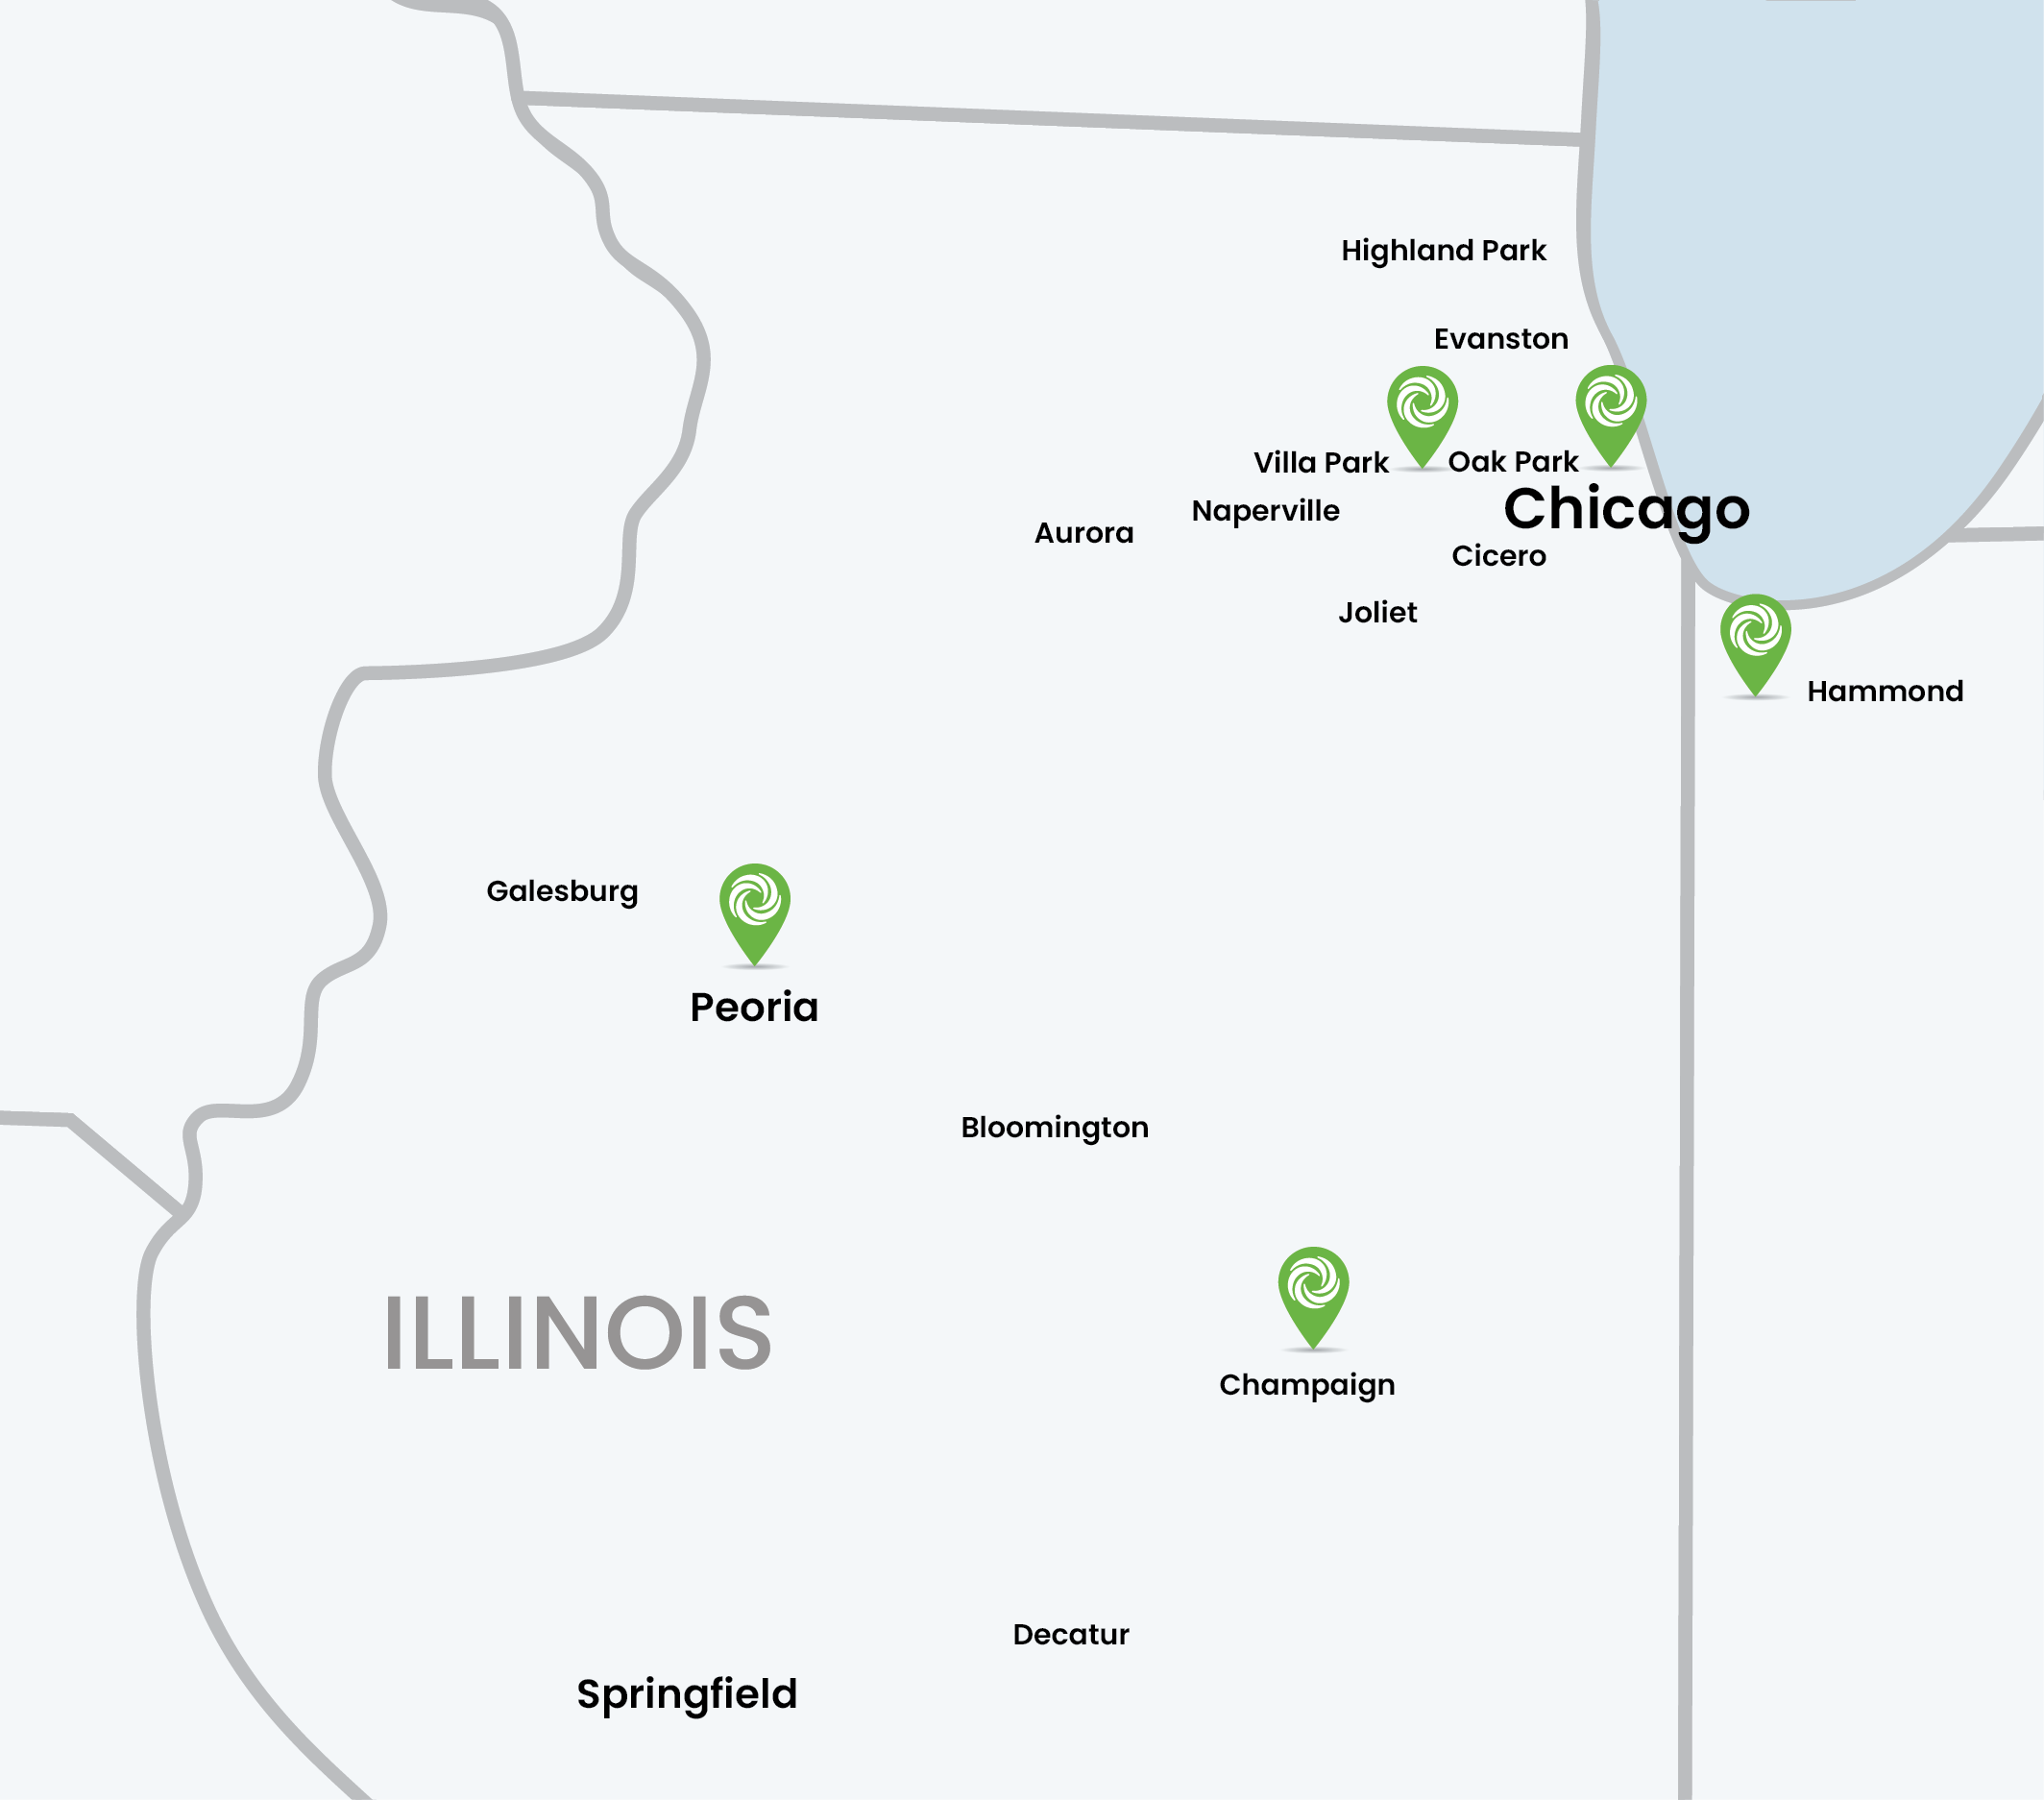 Mickey's Linen Illinois service area map